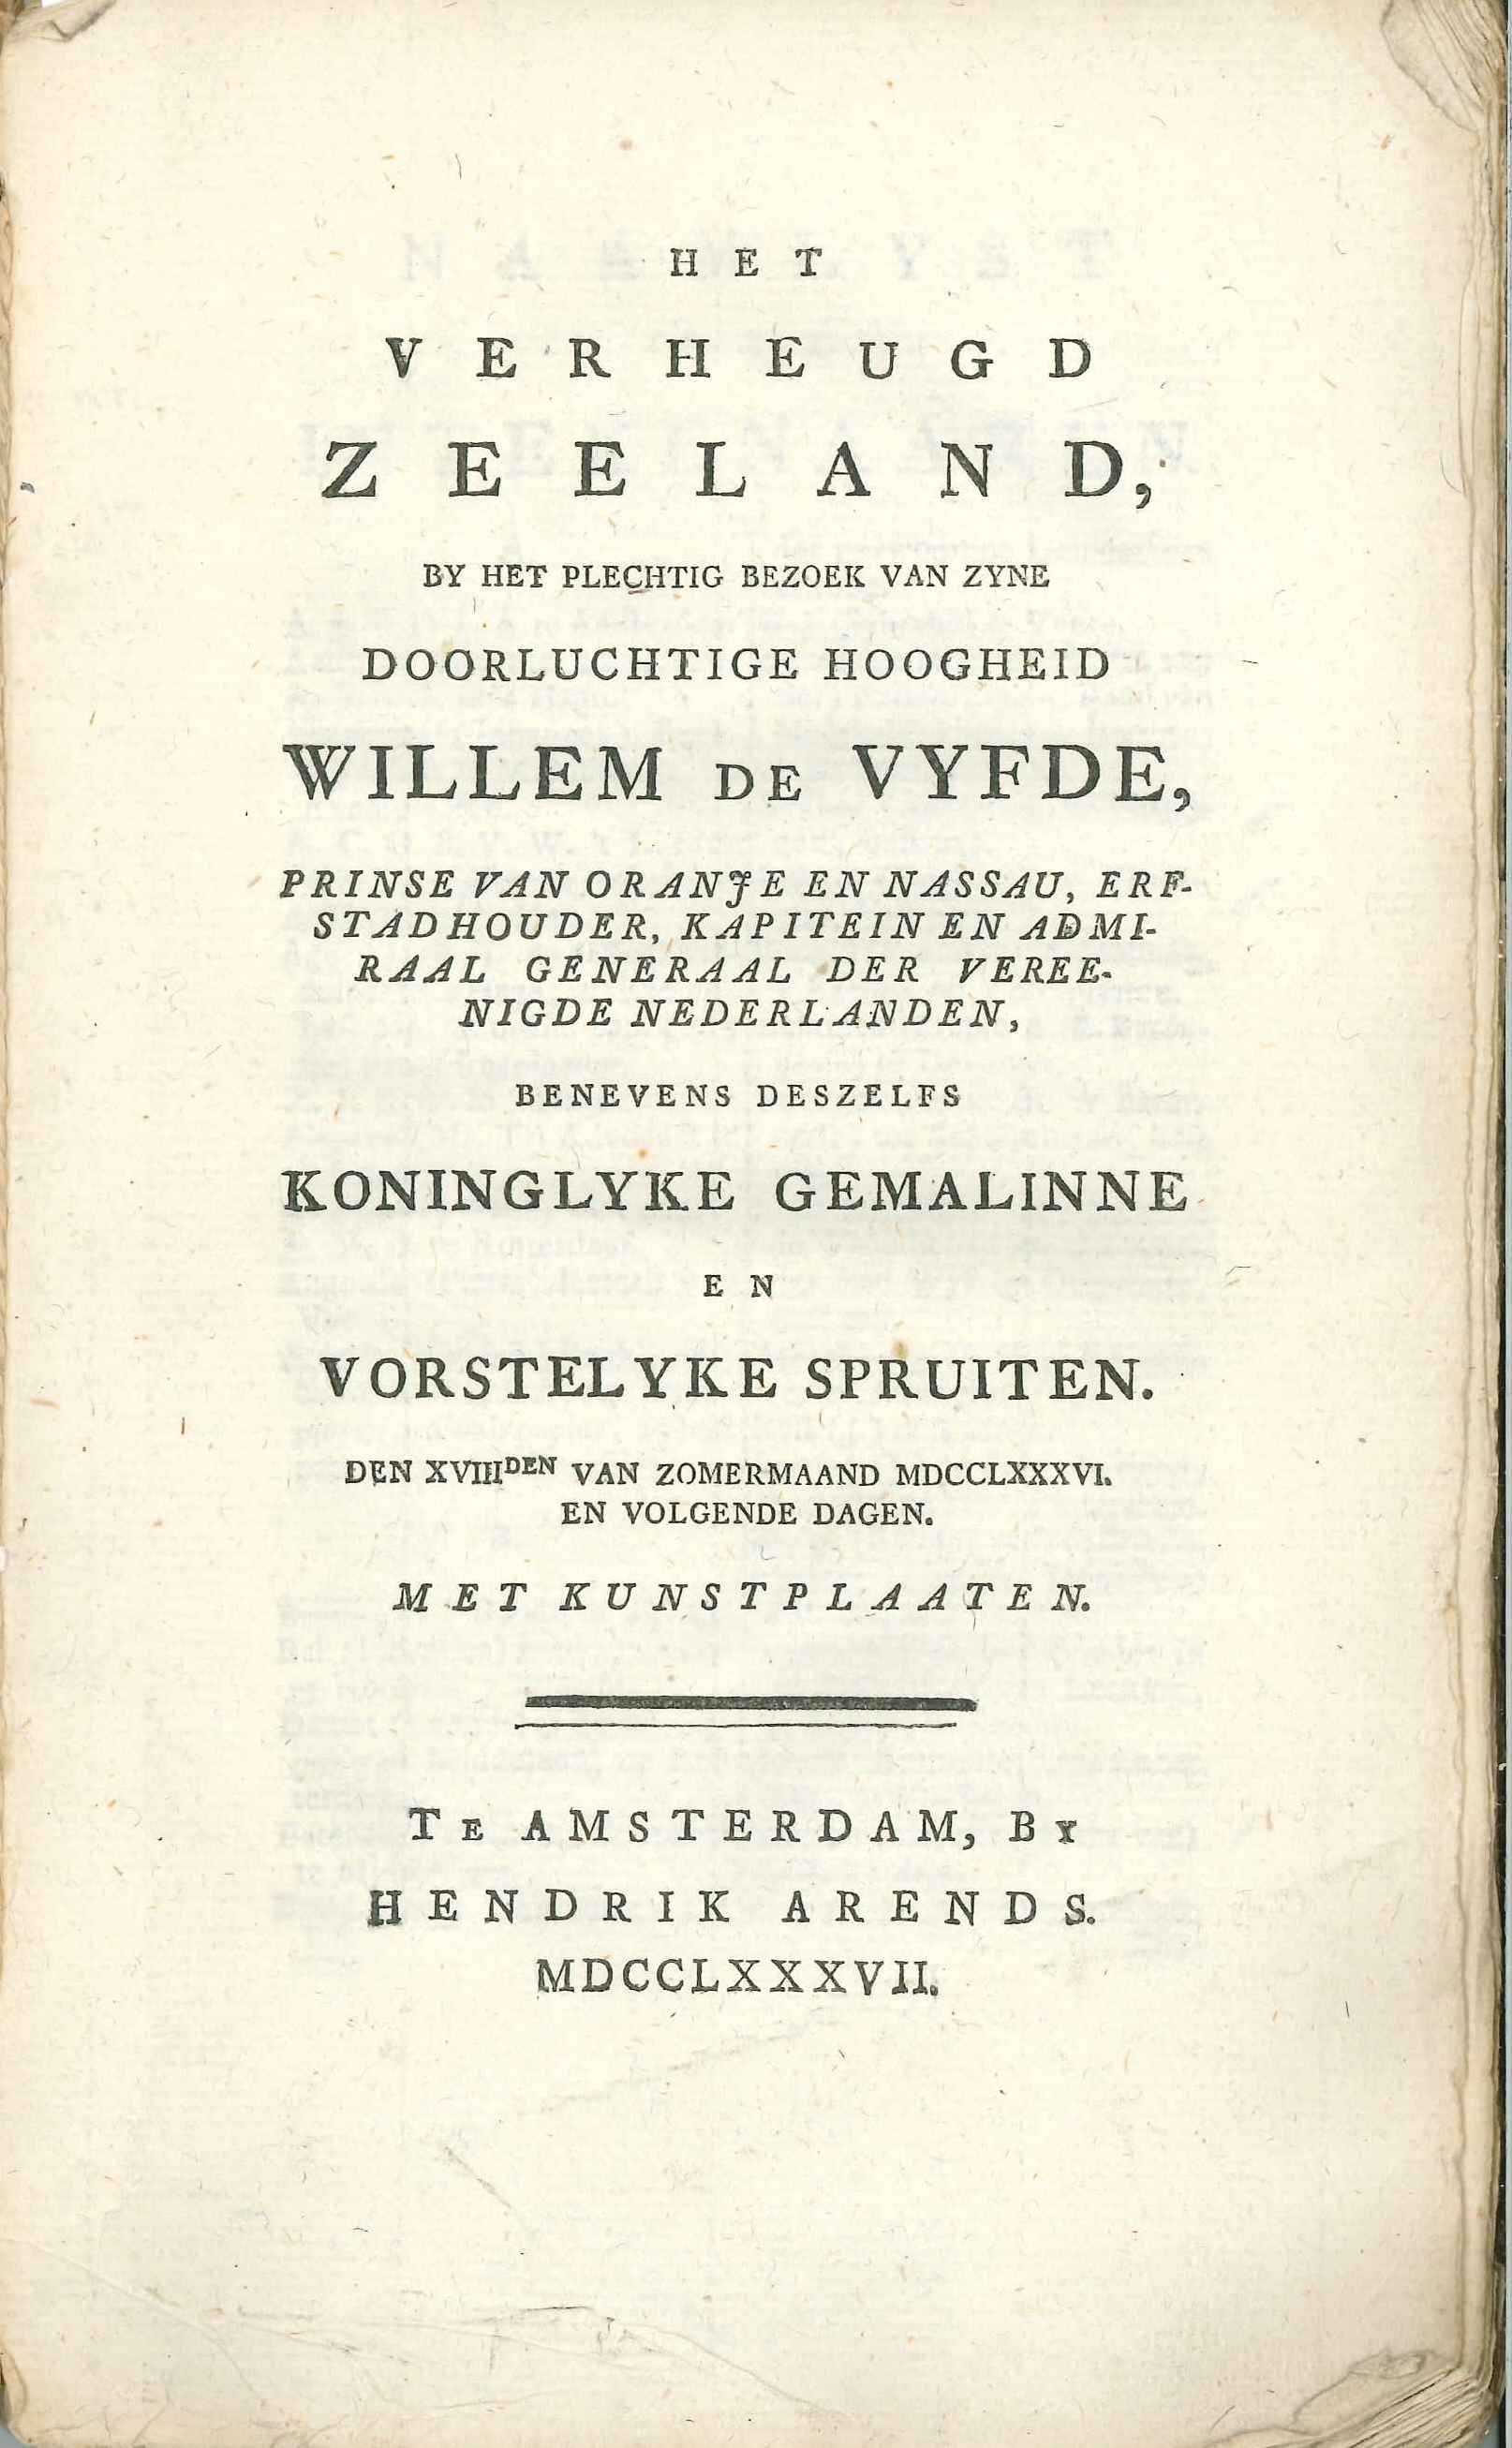 Titelblad van Het Verheugd Zeeland, beschrijving van het bezoek van de stadhouderlijke familie in 1786 aan Zeeland.